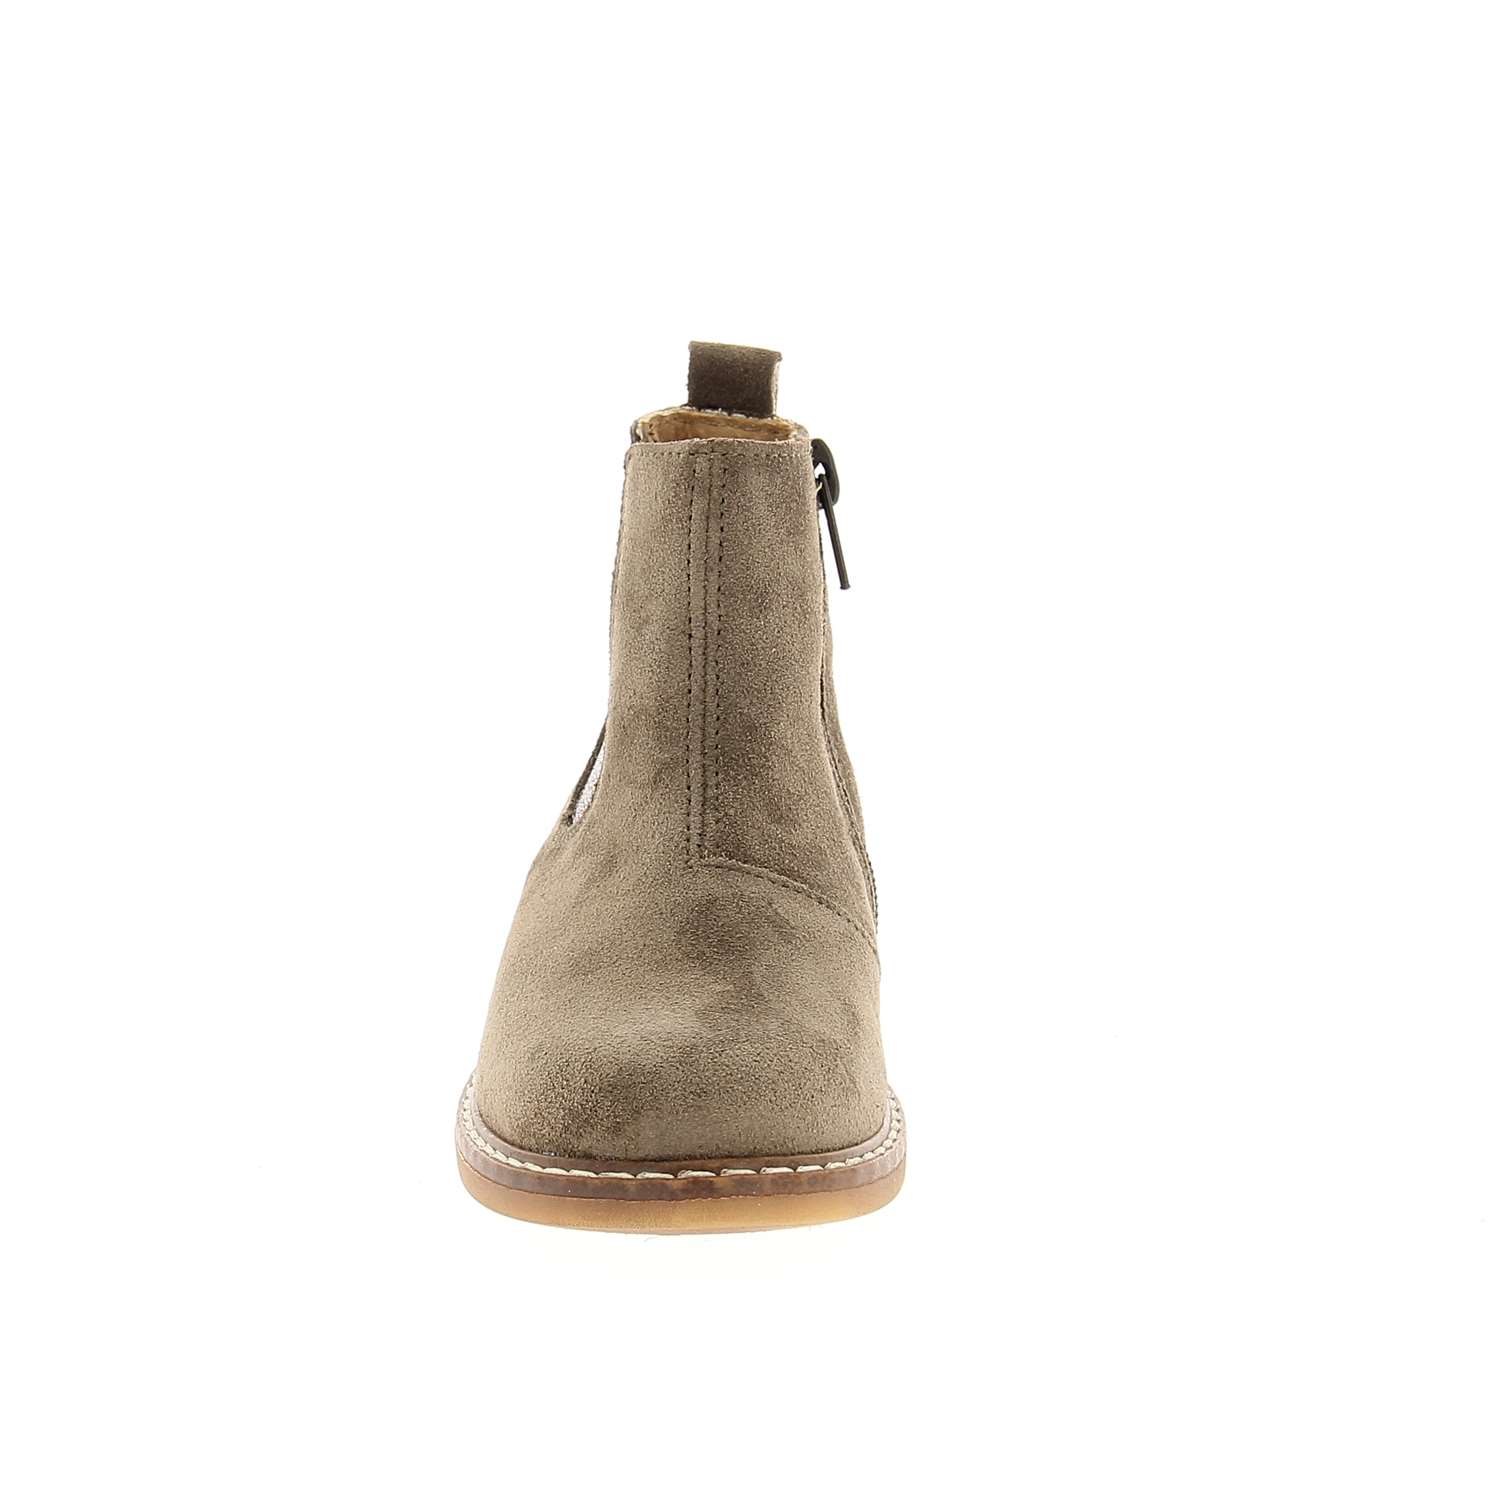 03 - SEVEN - BOPY - Boots et bottines - Croûte de cuir